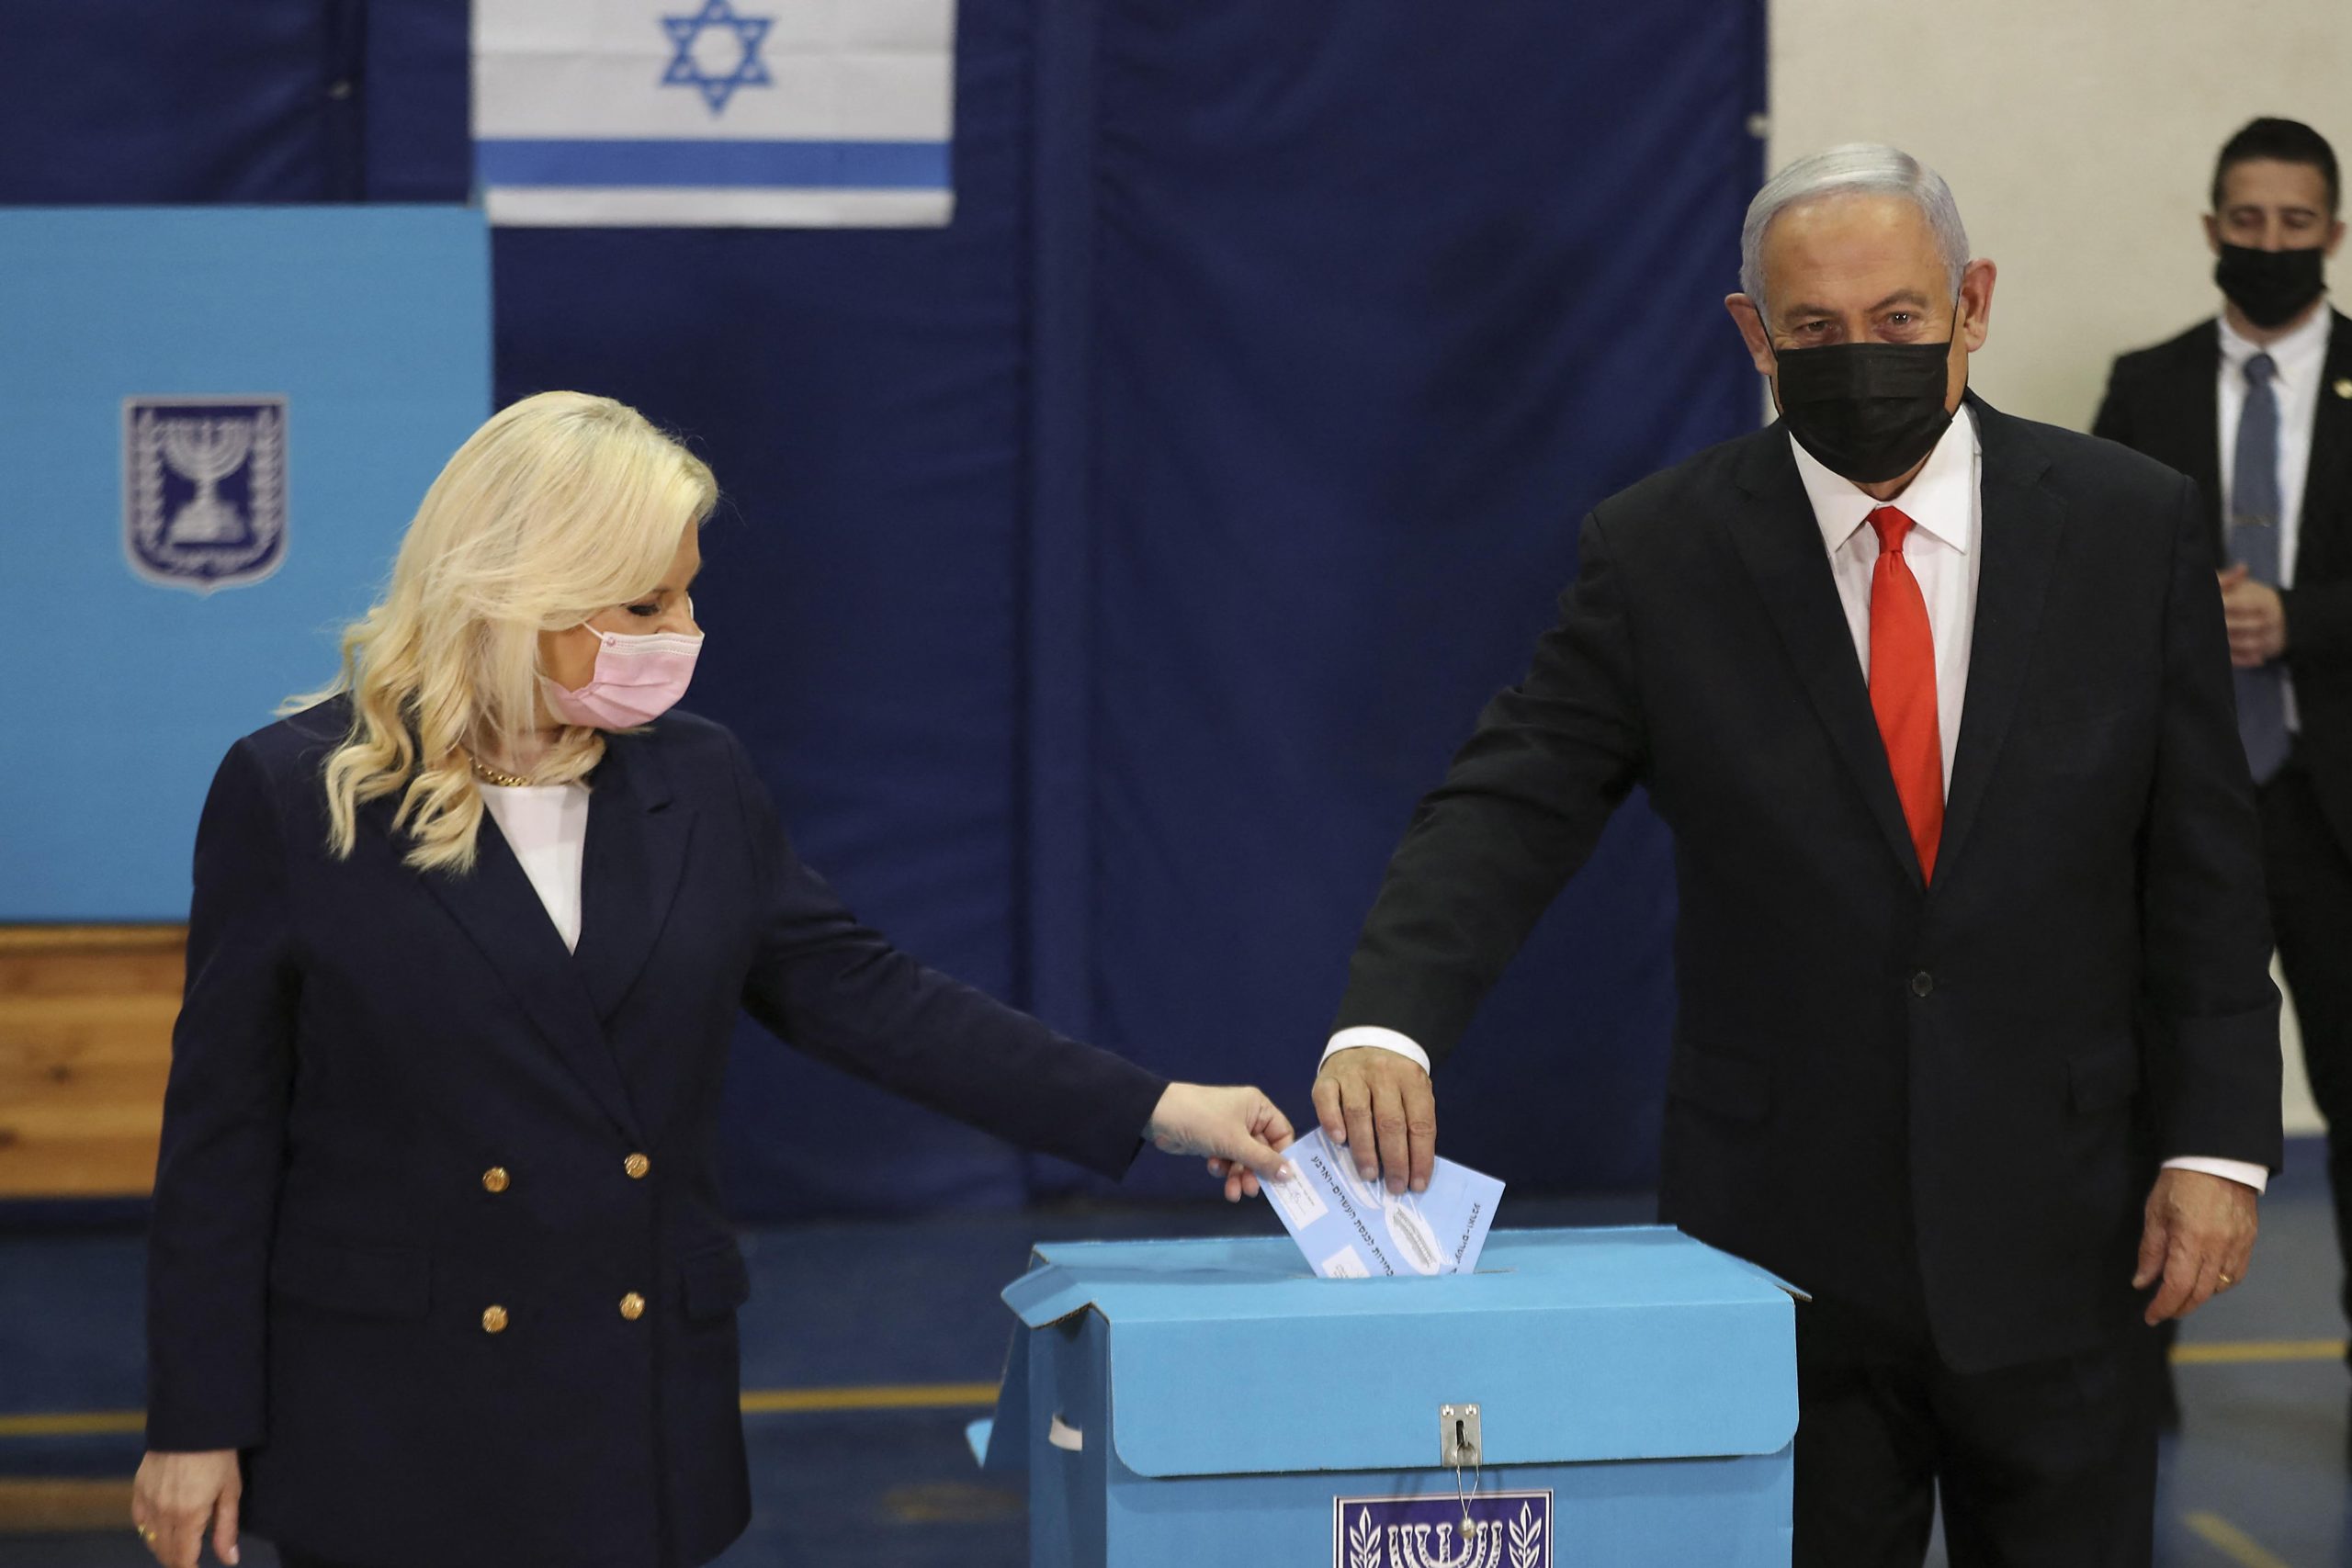 Netanyahu first, but he needs an oath